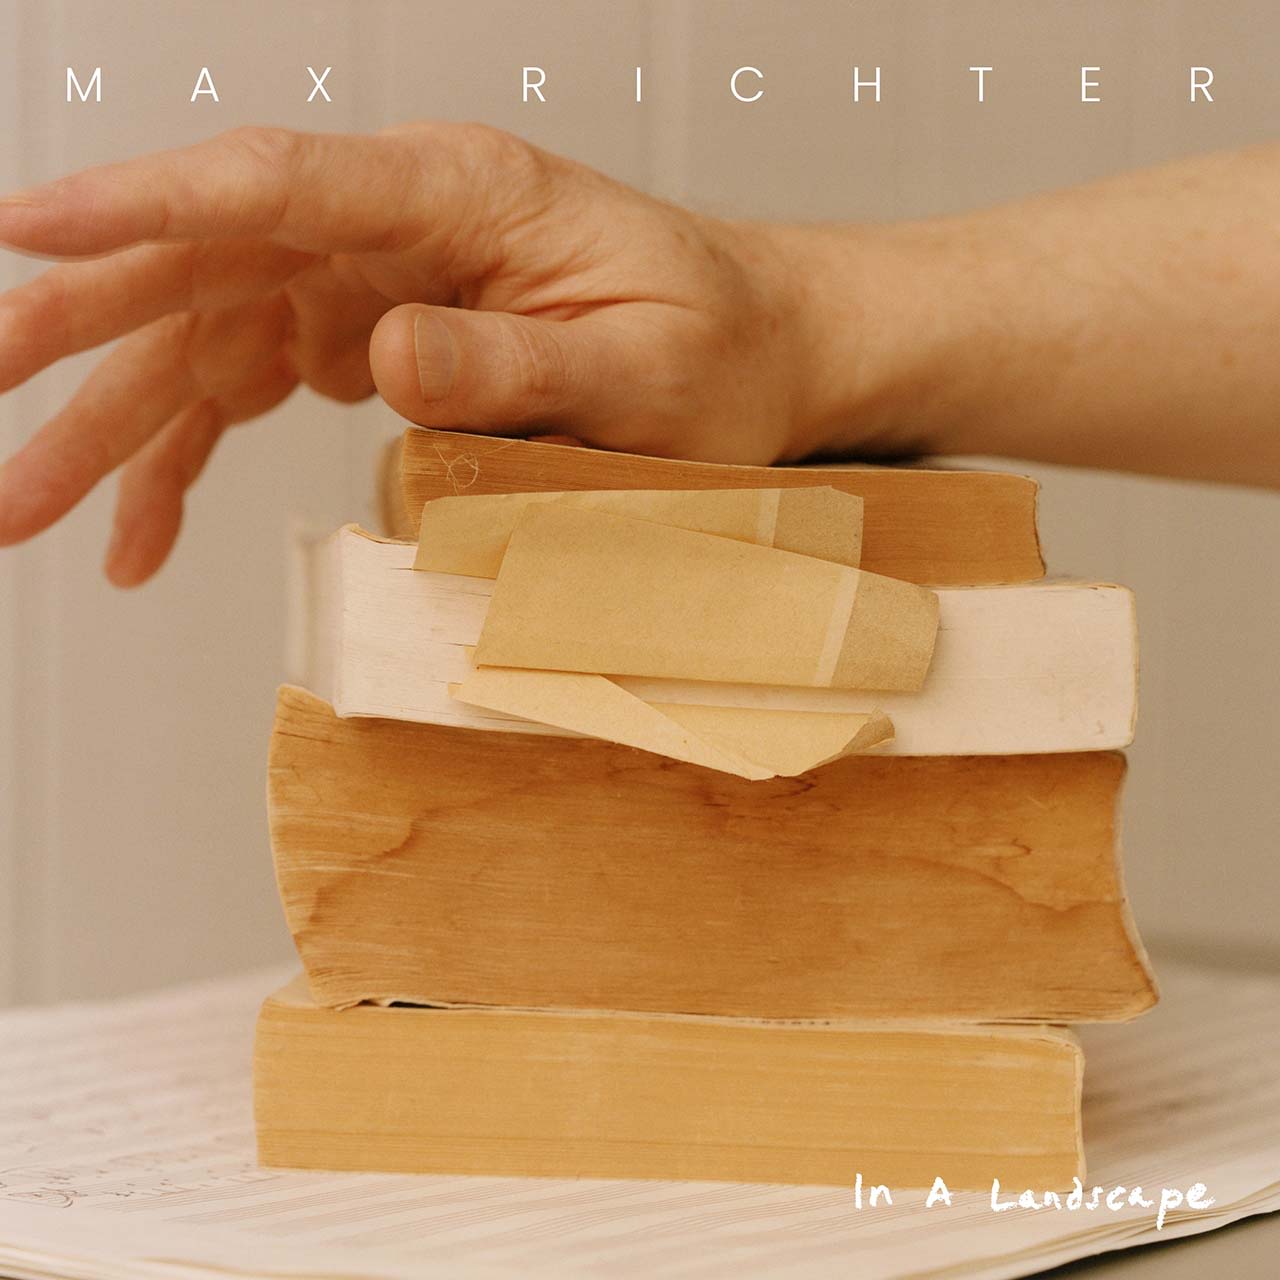 Max Richter Announces New Album ‘In A Landscape’